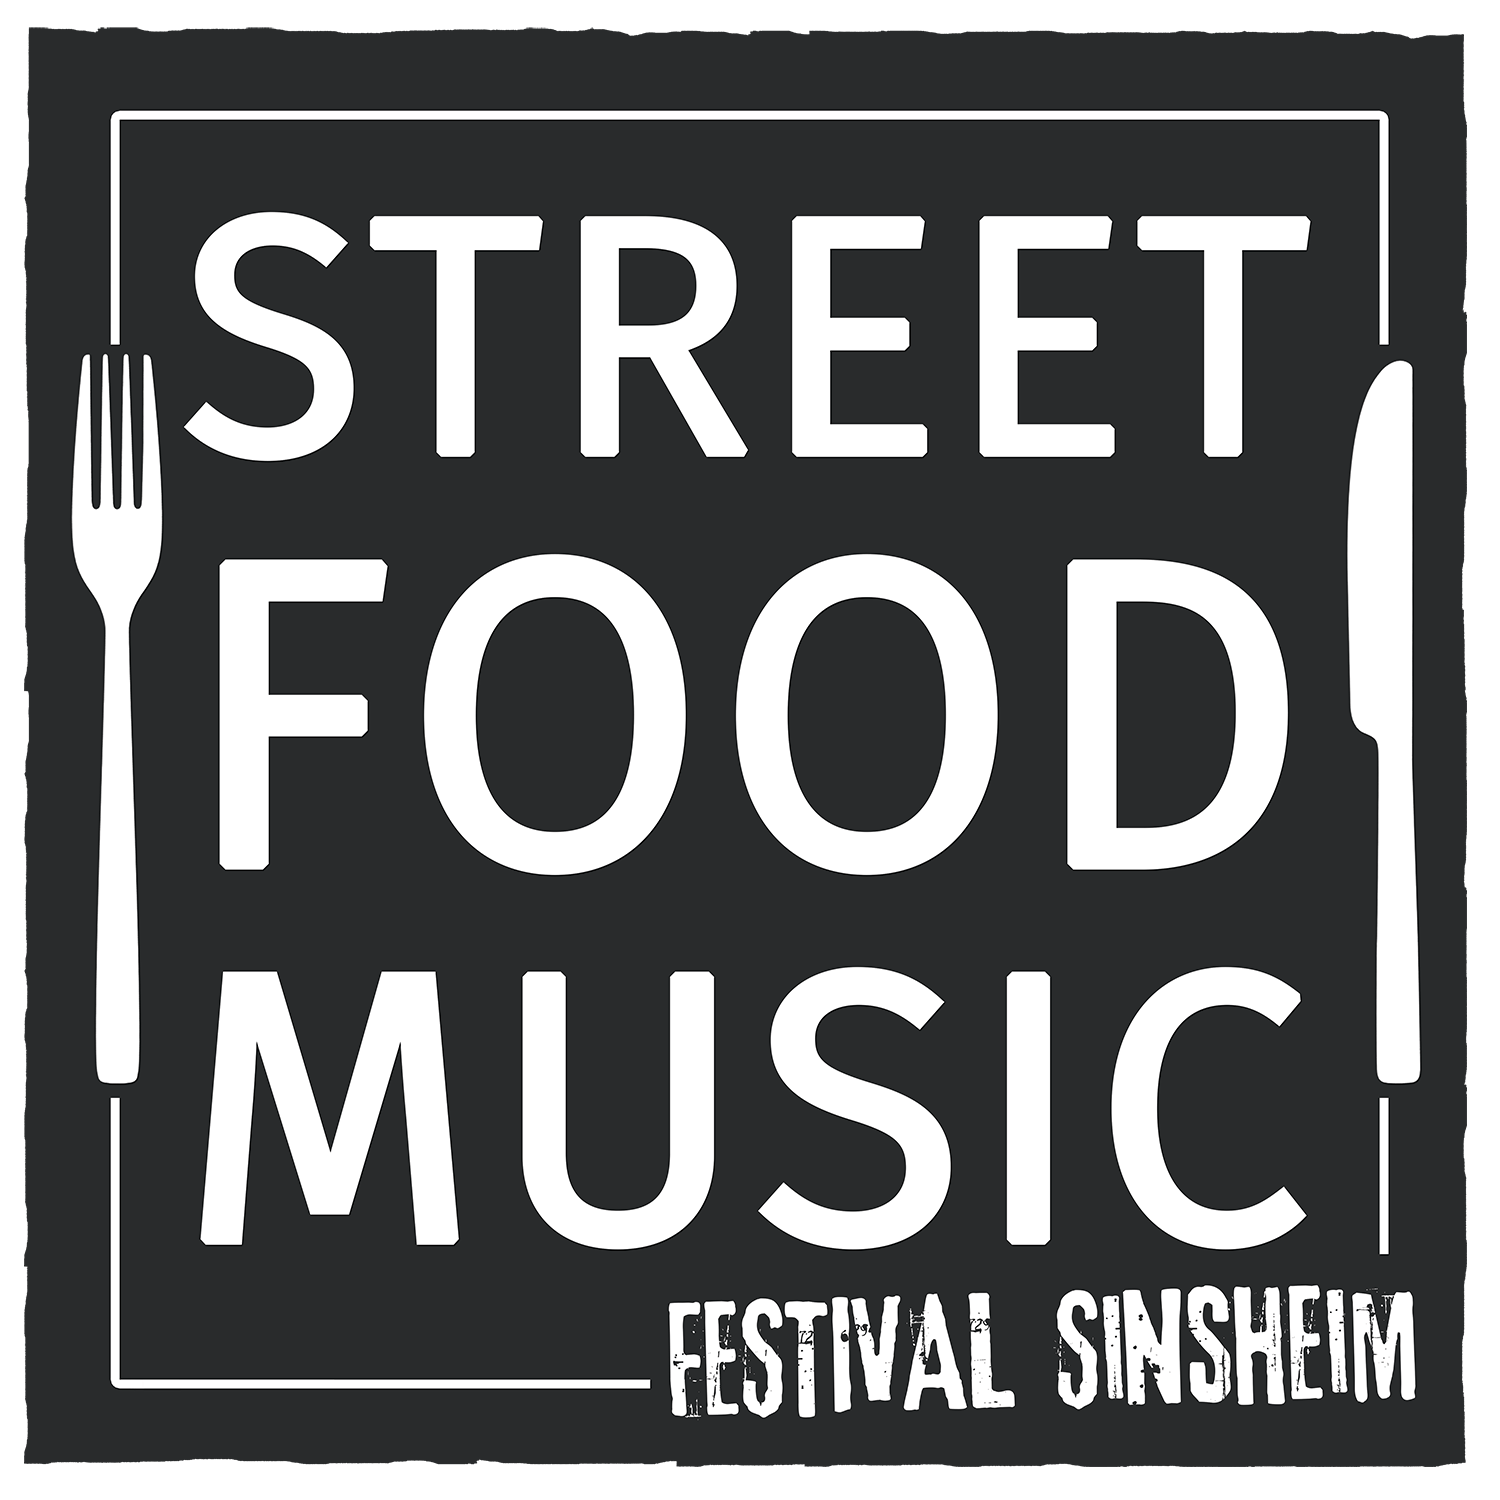 Street Food & Music Festival Sinsheim